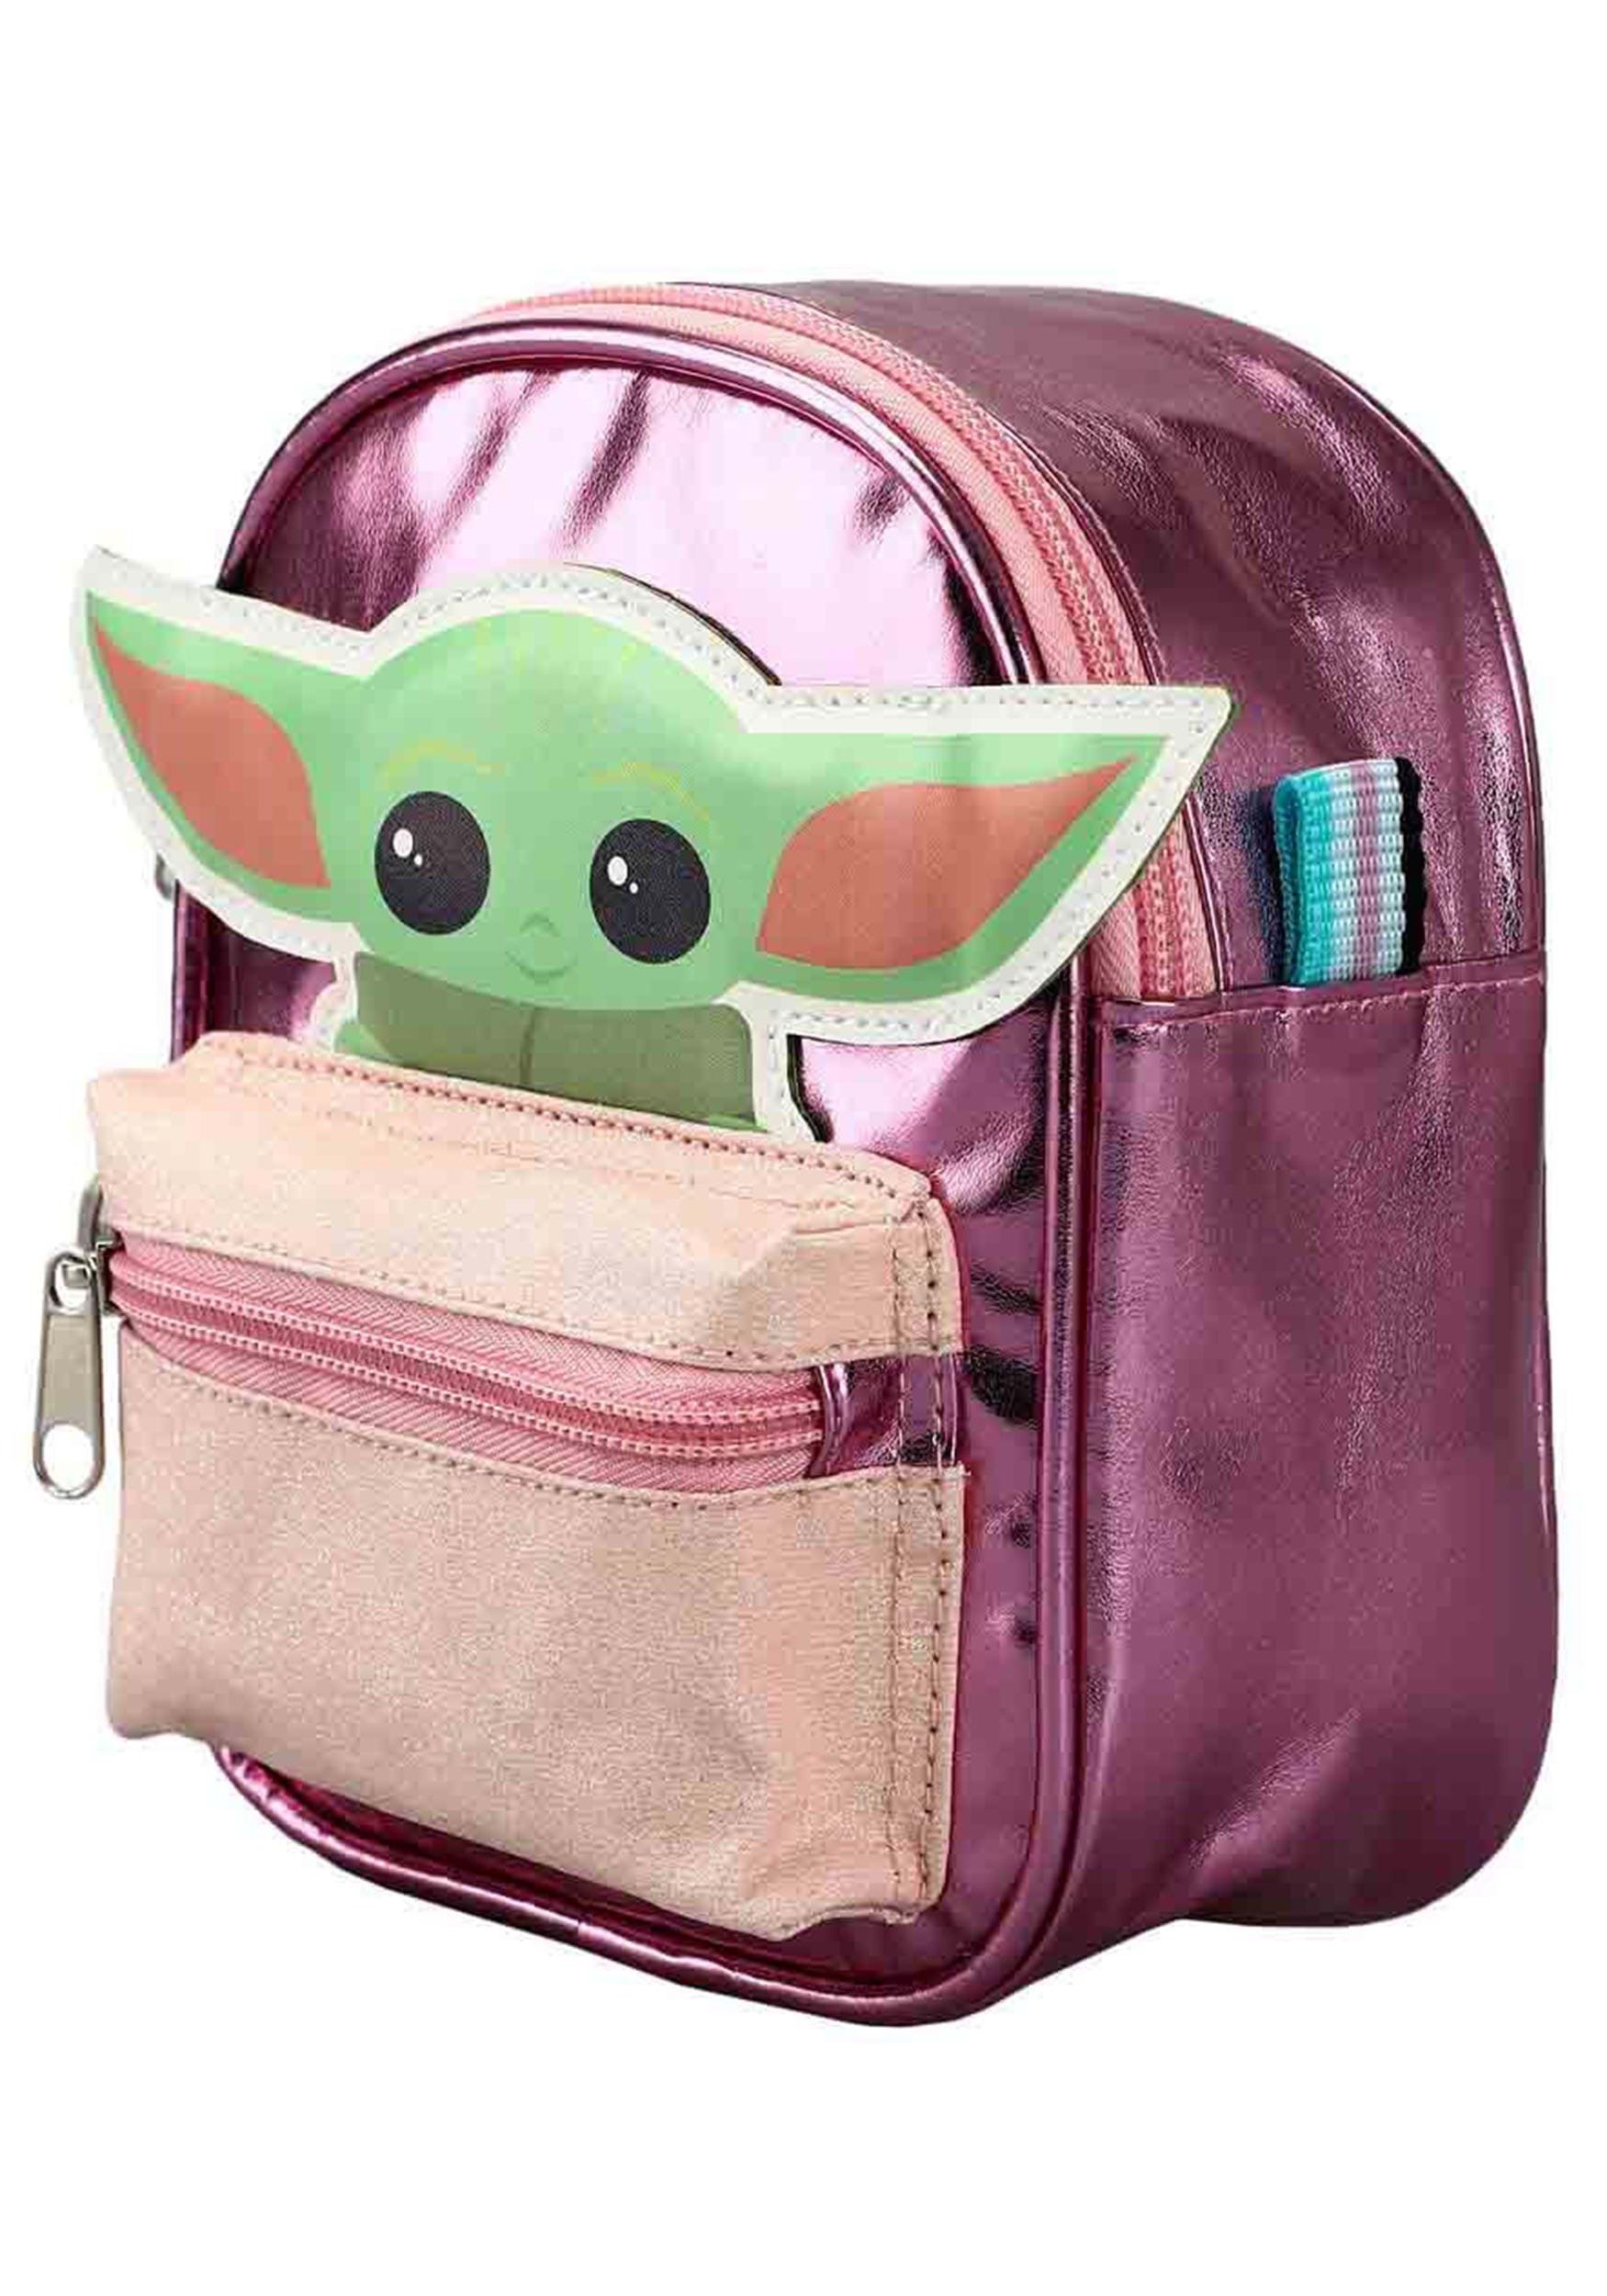 The Mandalorian Star Wars Grogu Kids Mini Backpack